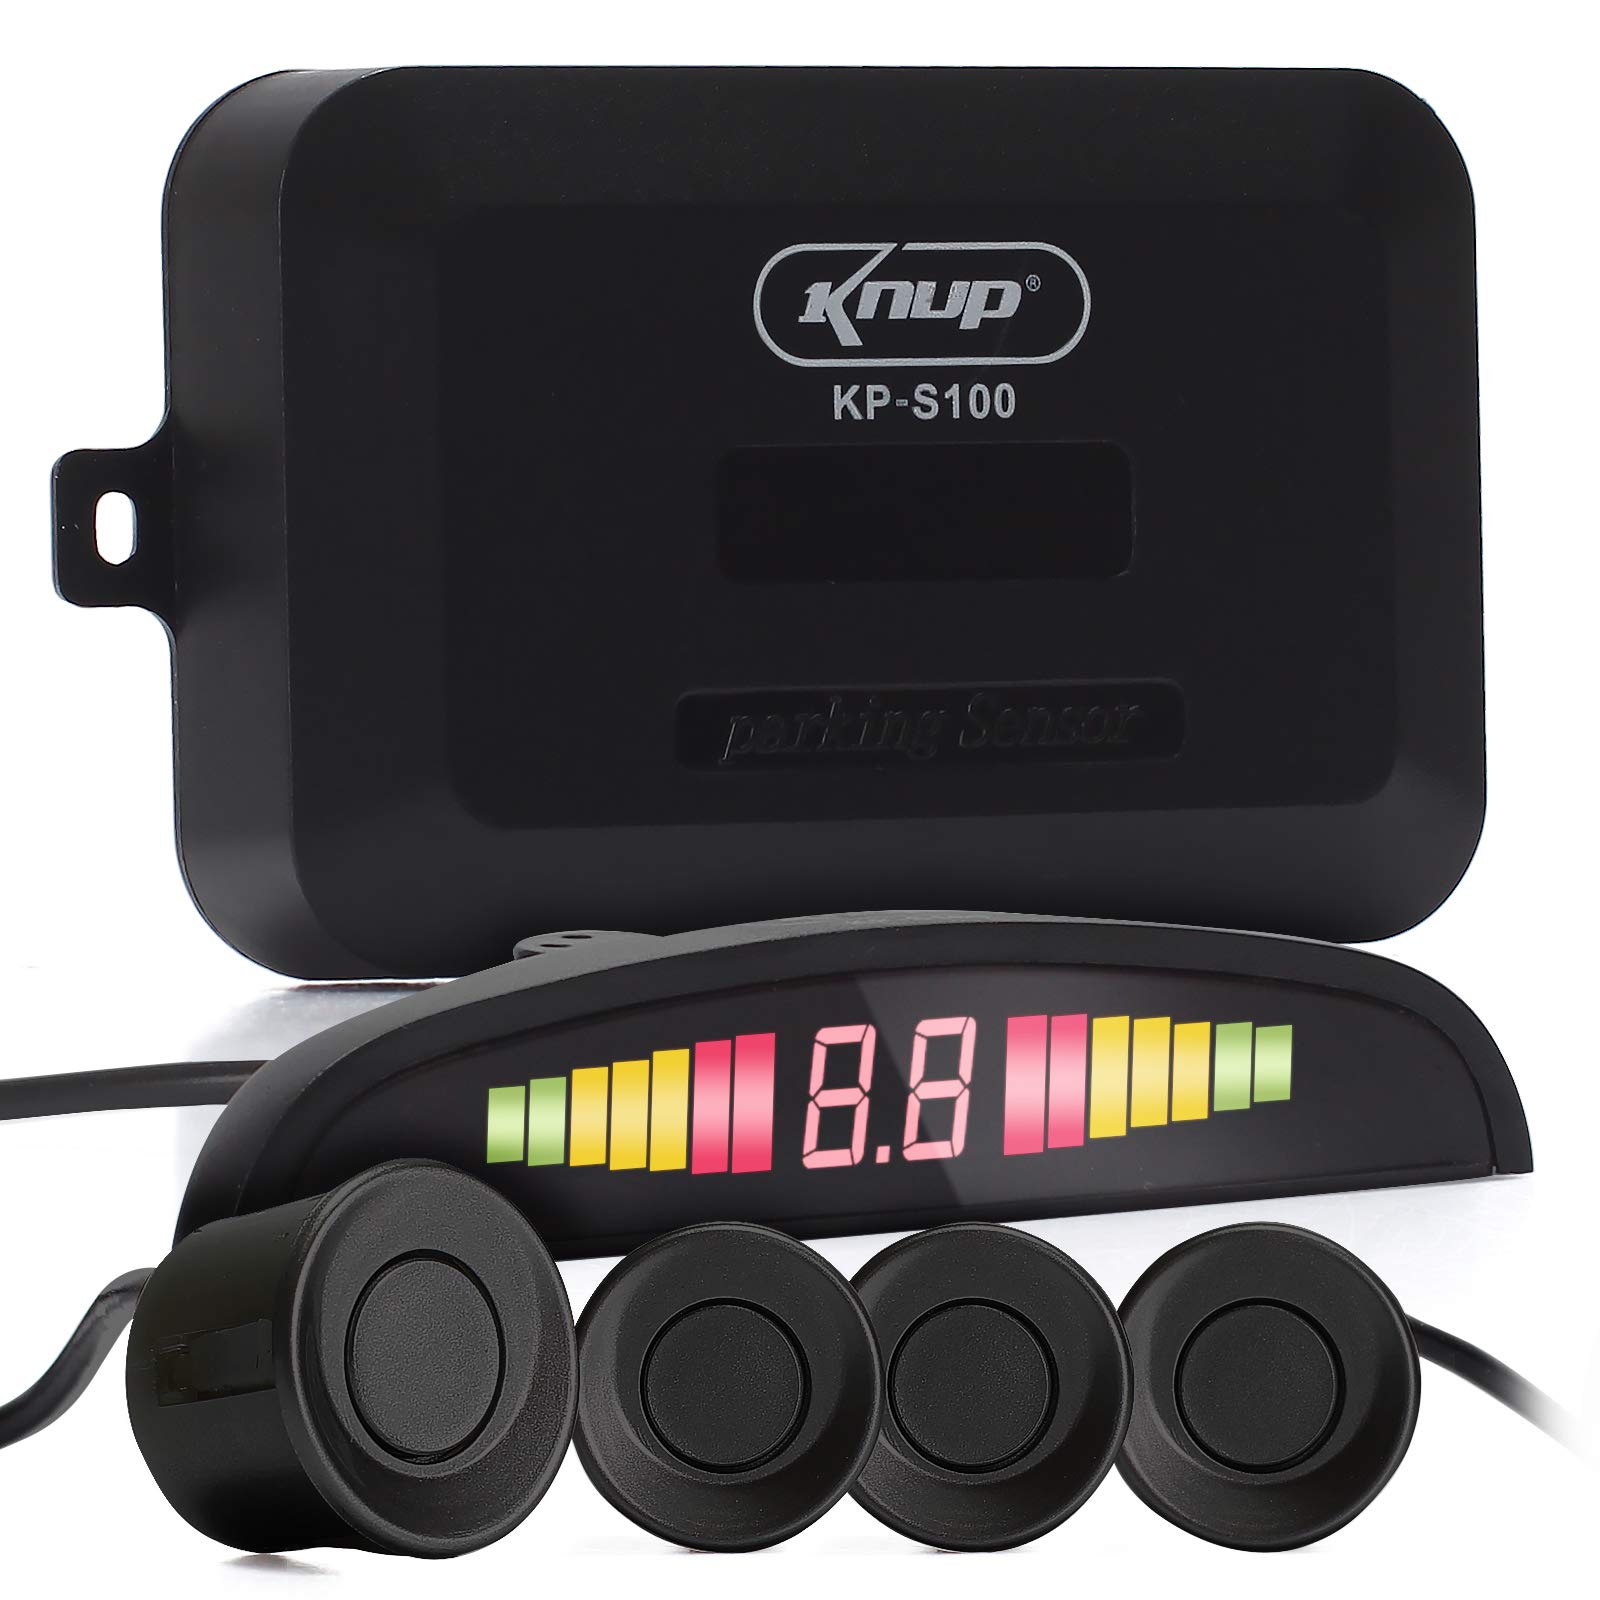 Knup Sensor de Estacionamento com Display de LED Colorido